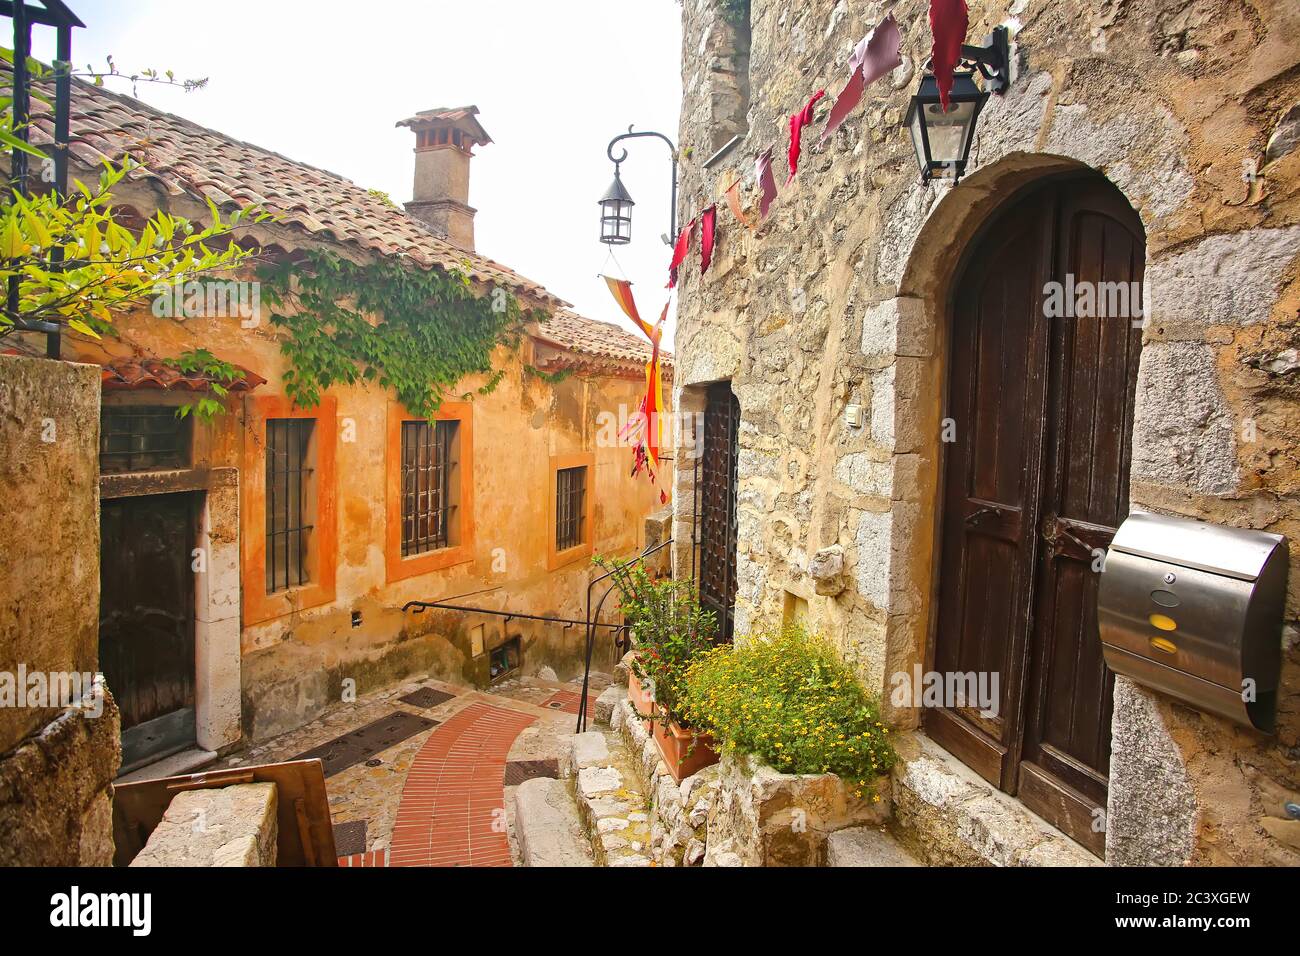 À l'intérieur des vieilles rues du magnifique village médiéval d'Eze, au sommet d'une colline. Bâtiments historiques avec atmosphère, Côte d'Azur, sud de la France. Banque D'Images